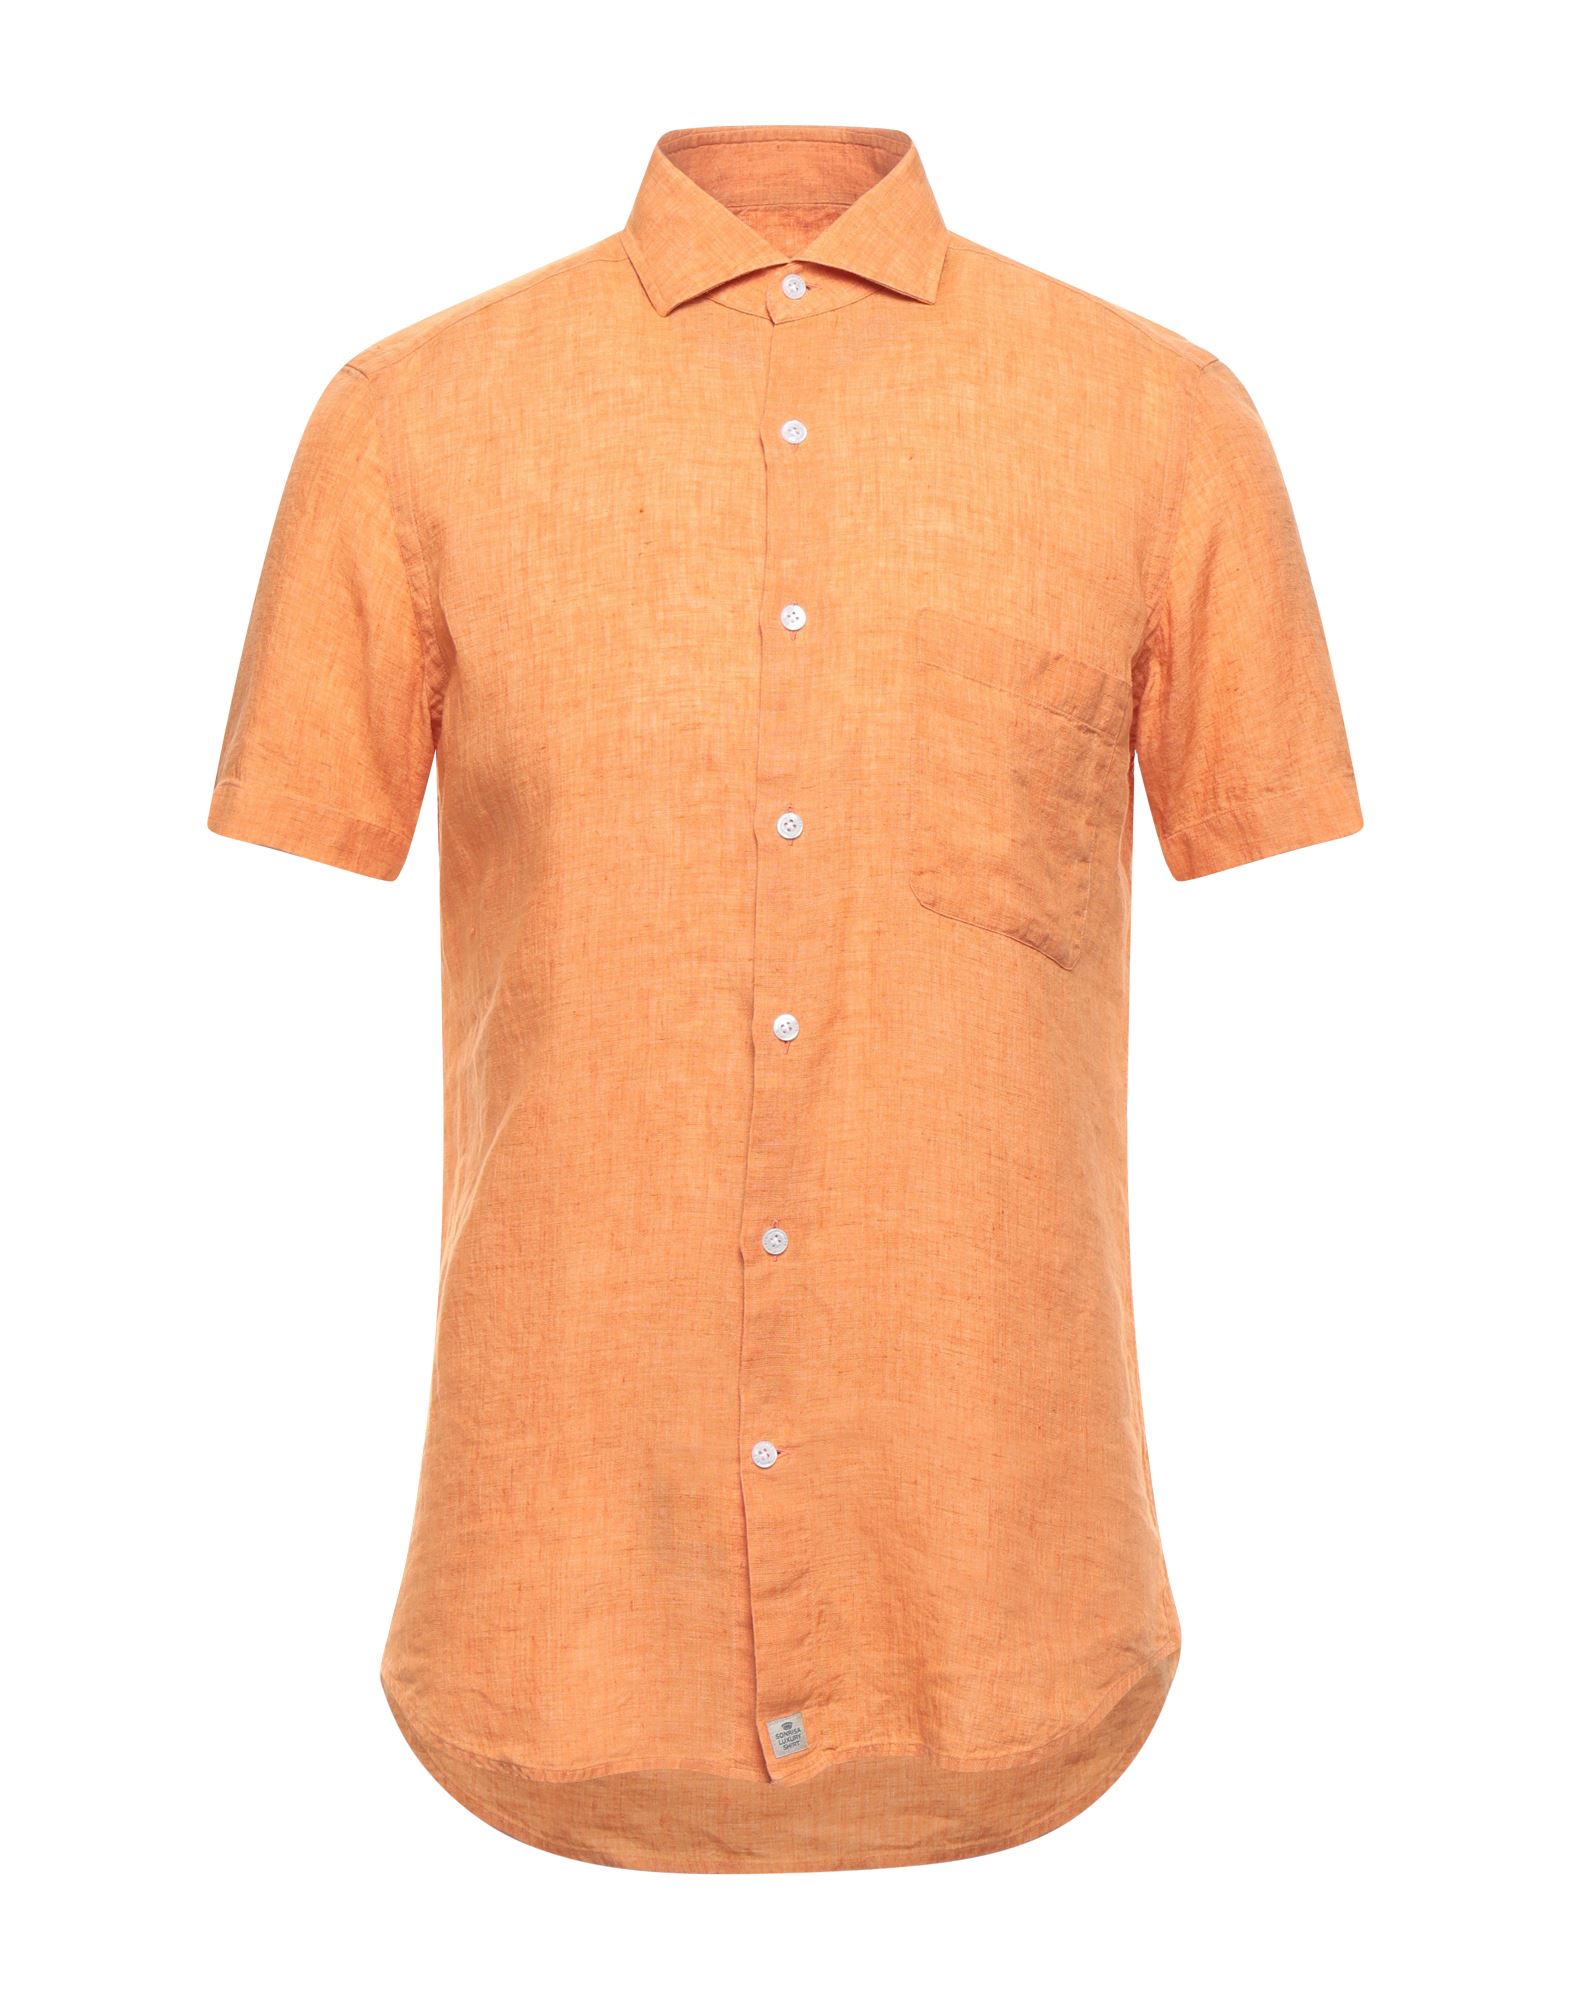 Sonrisa Shirts In Orange